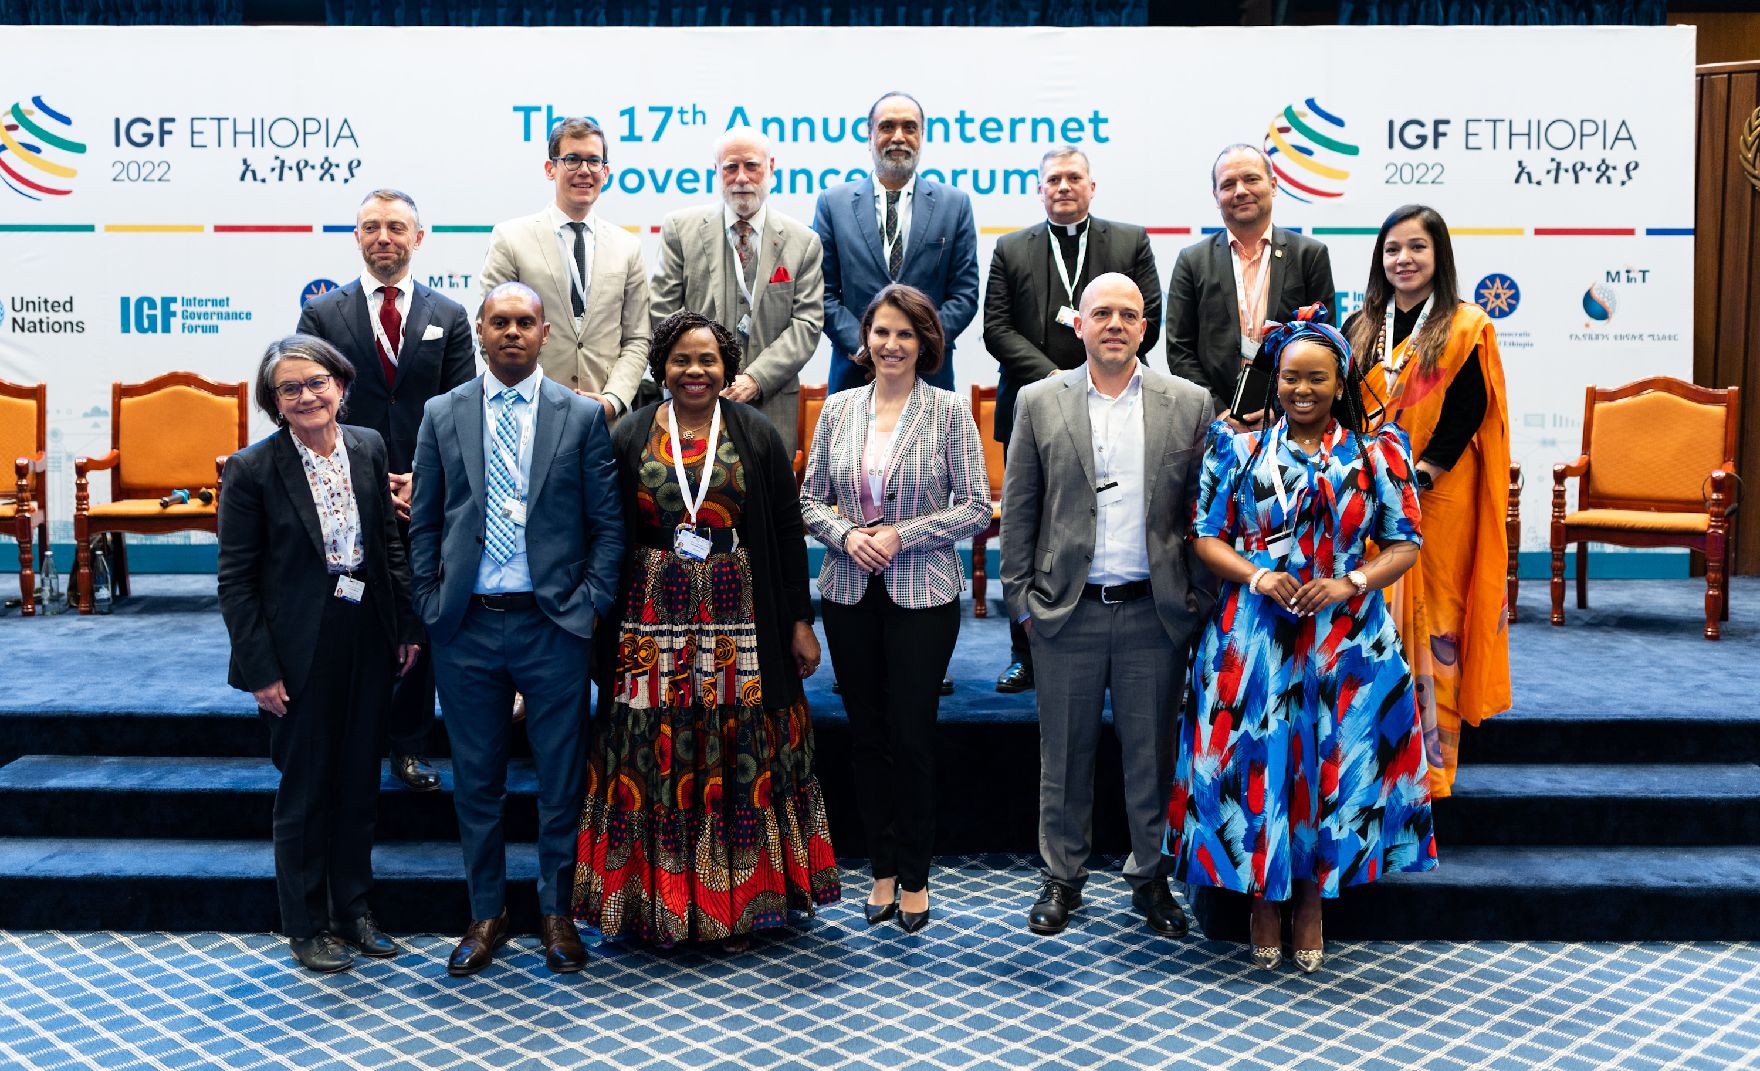 Am 28. November 2022 reiste Bundesministerin Karoline Edtstadler zu einem mehrtägigen Arbeitsbesuch nach Addis Abeba. Im Bild bei der Sitzung der hochrangigen UN- Führungskräfte zum Thema "Digitale Rechte“.